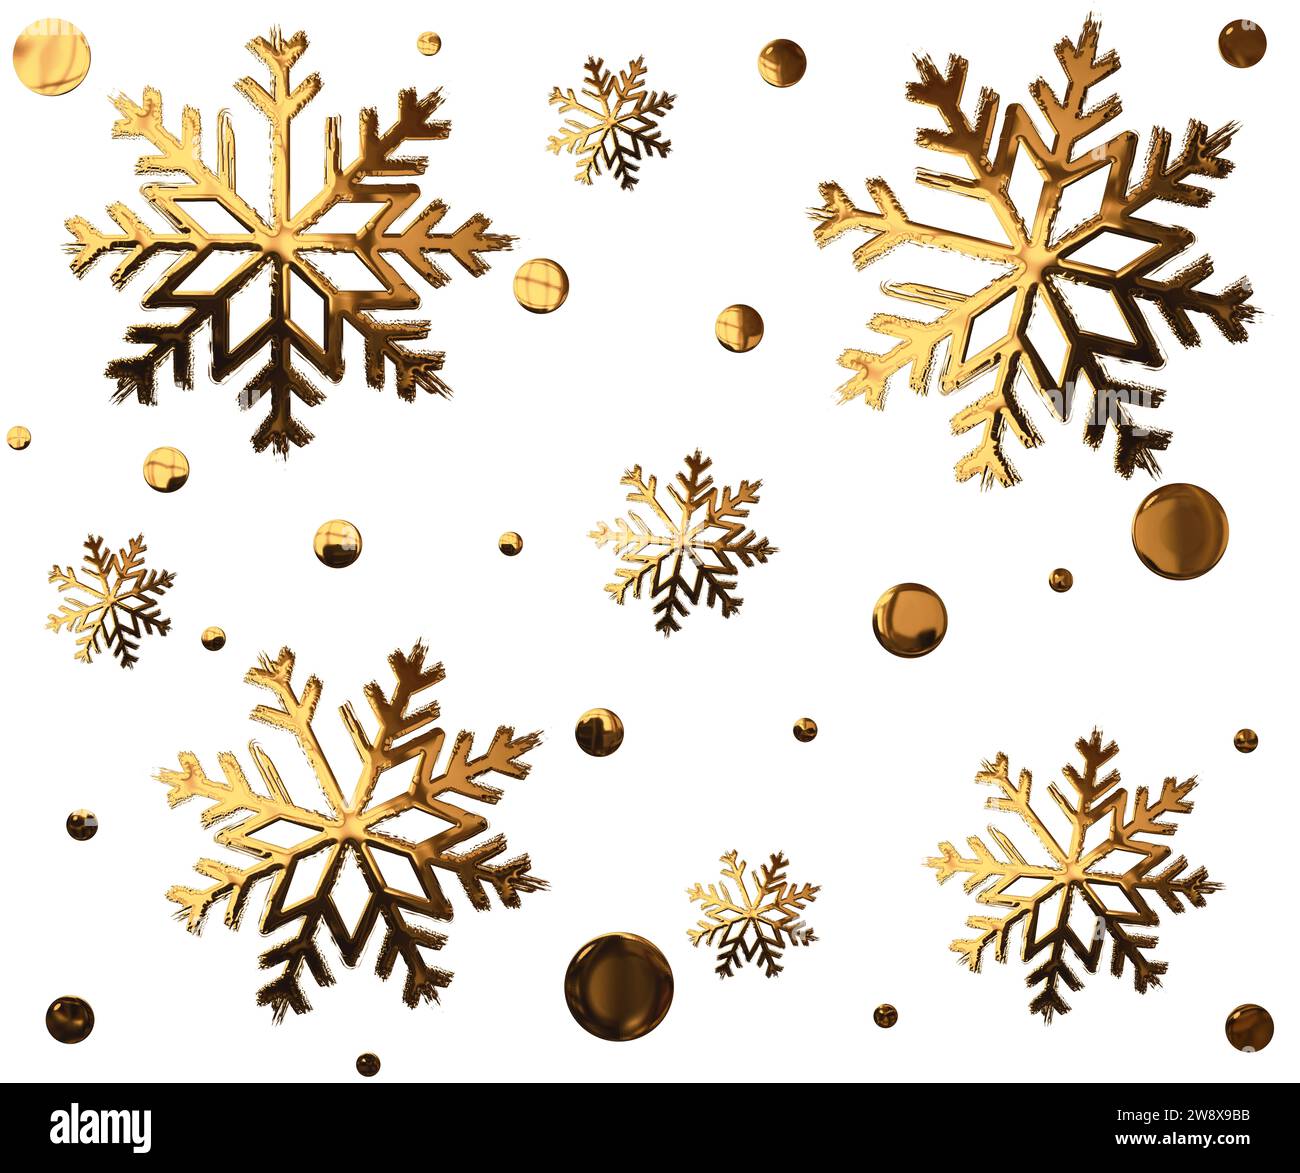 illustration de flocons de neige dorés Banque D'Images